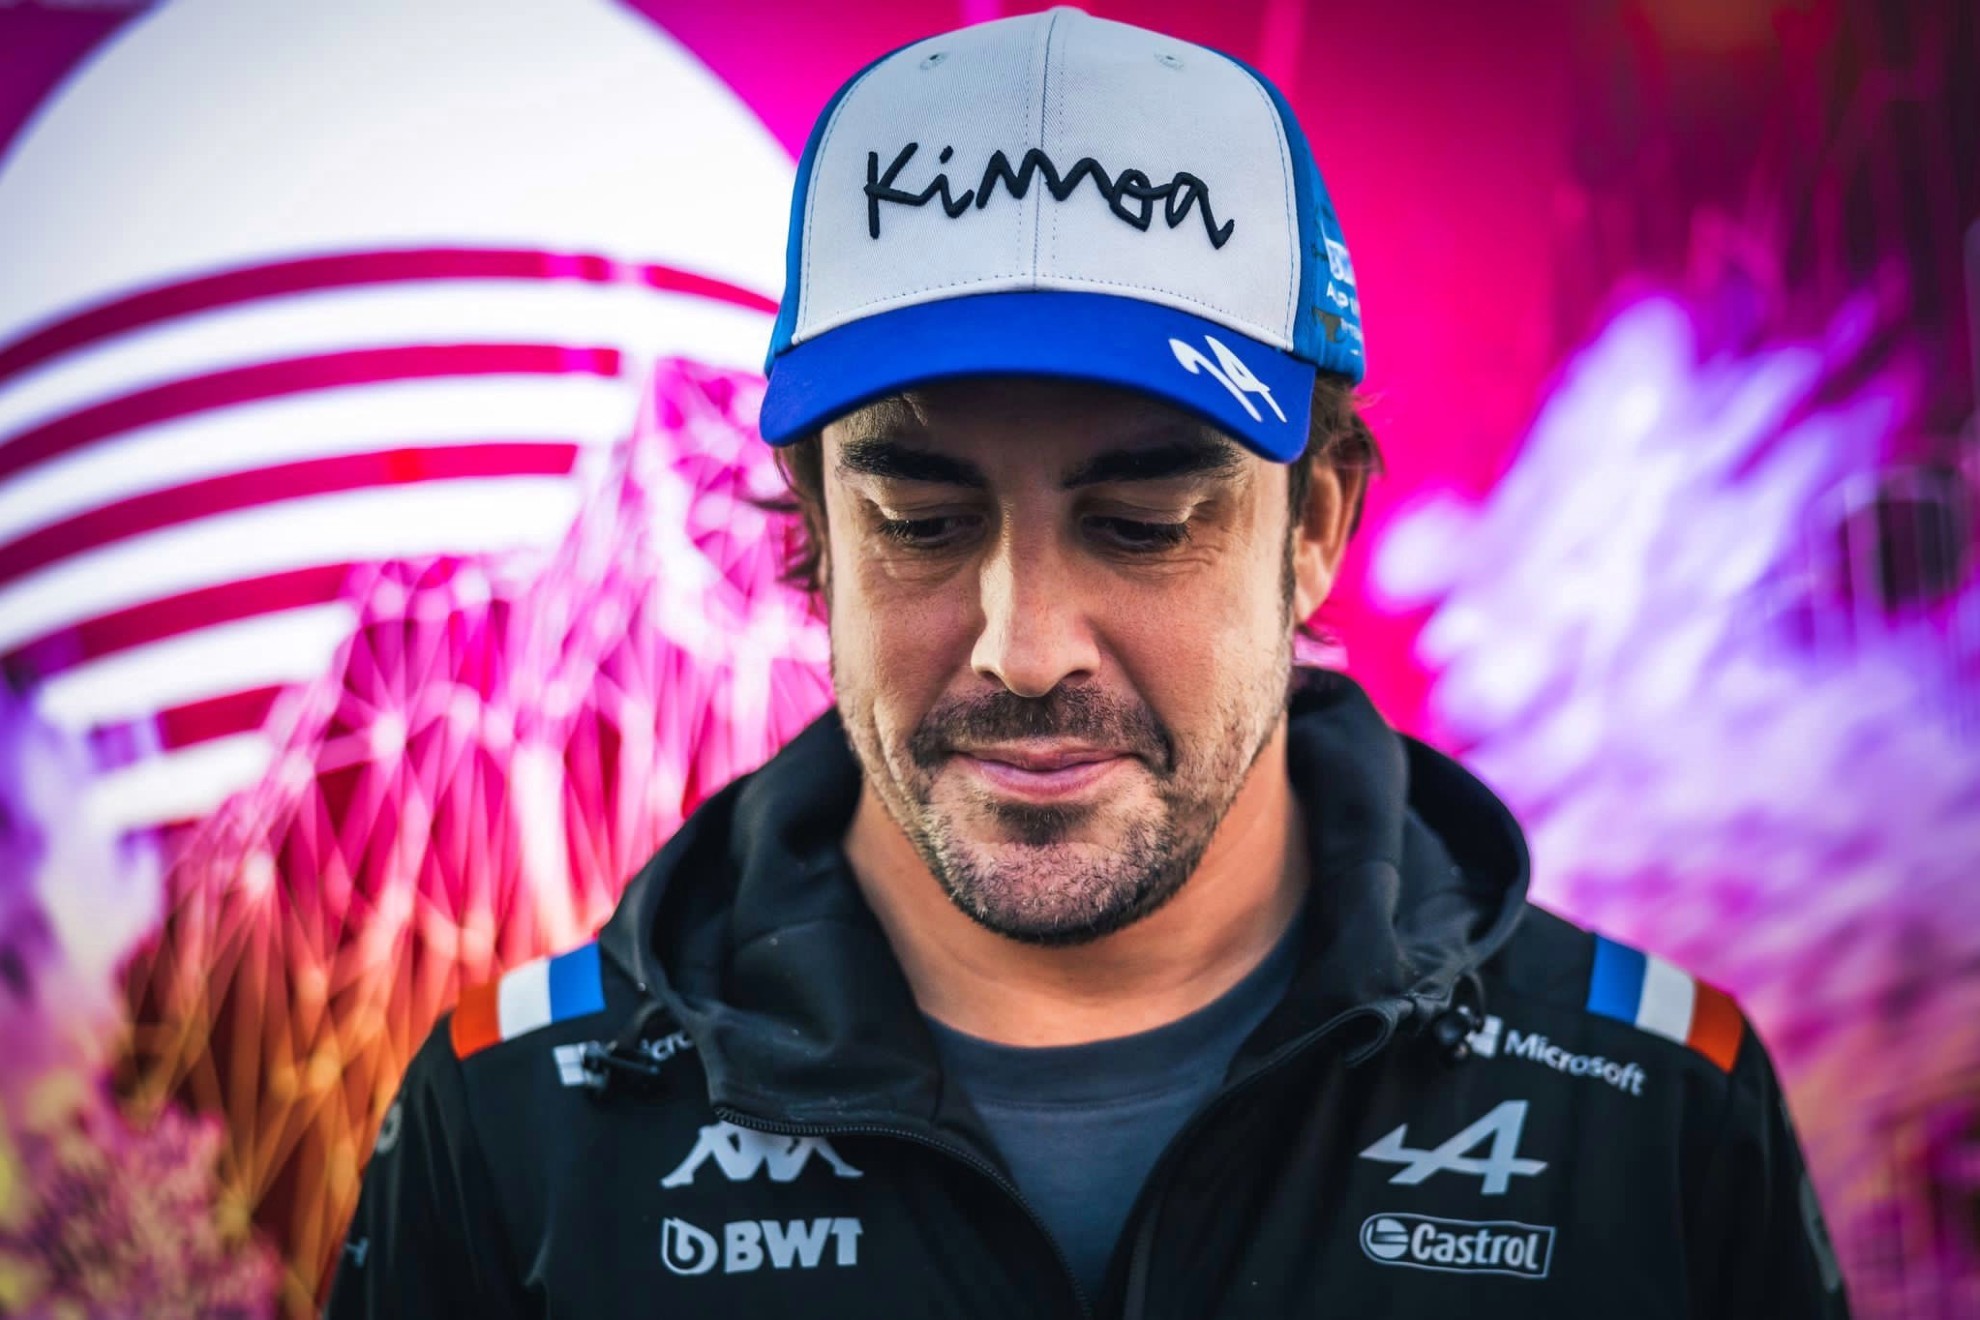 Fernando Alonso / @alo_oficial